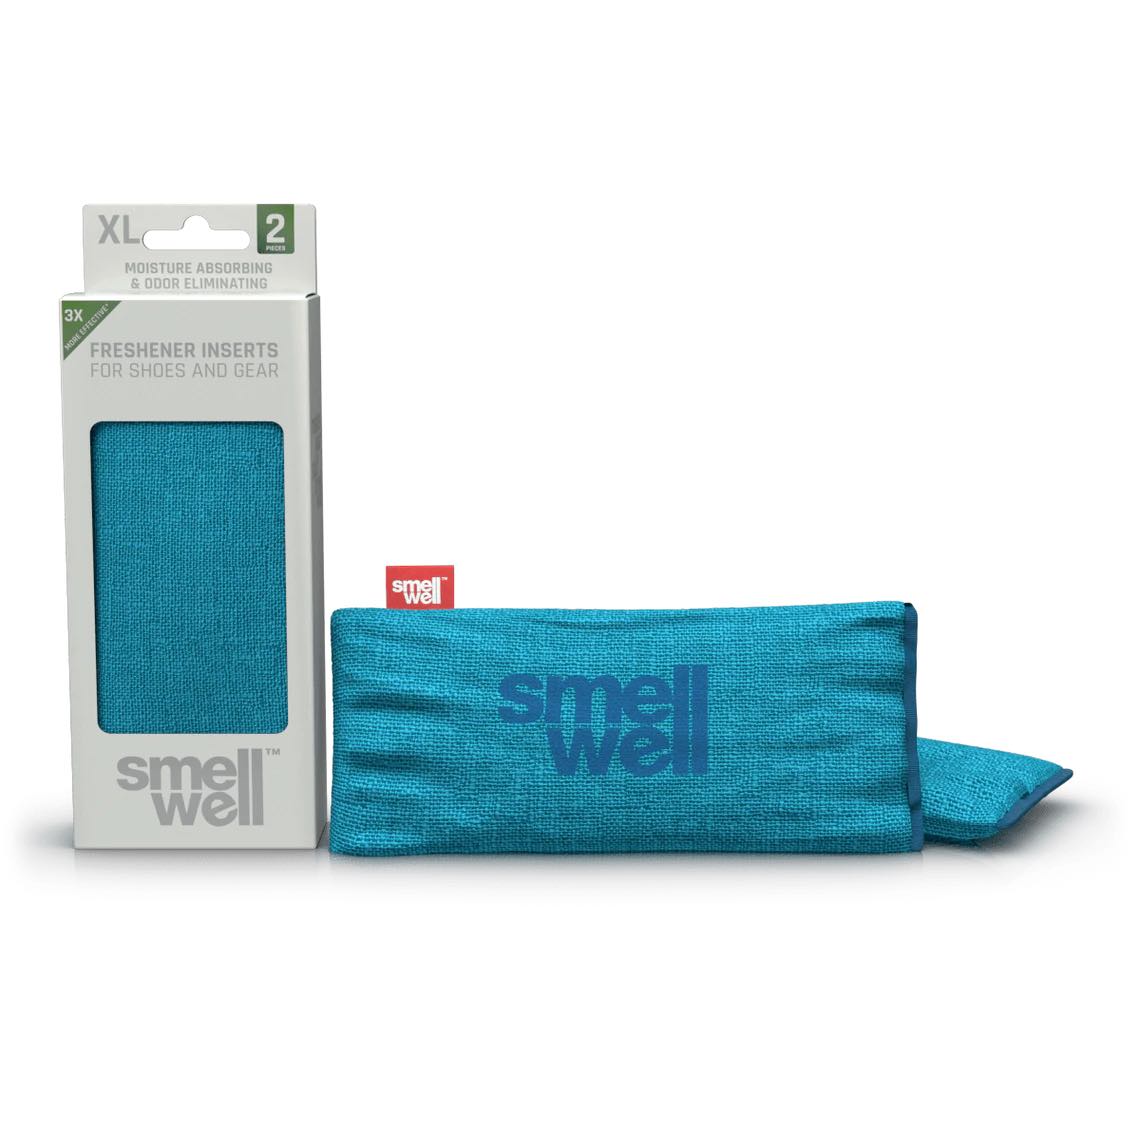 smellwell sensitive XL